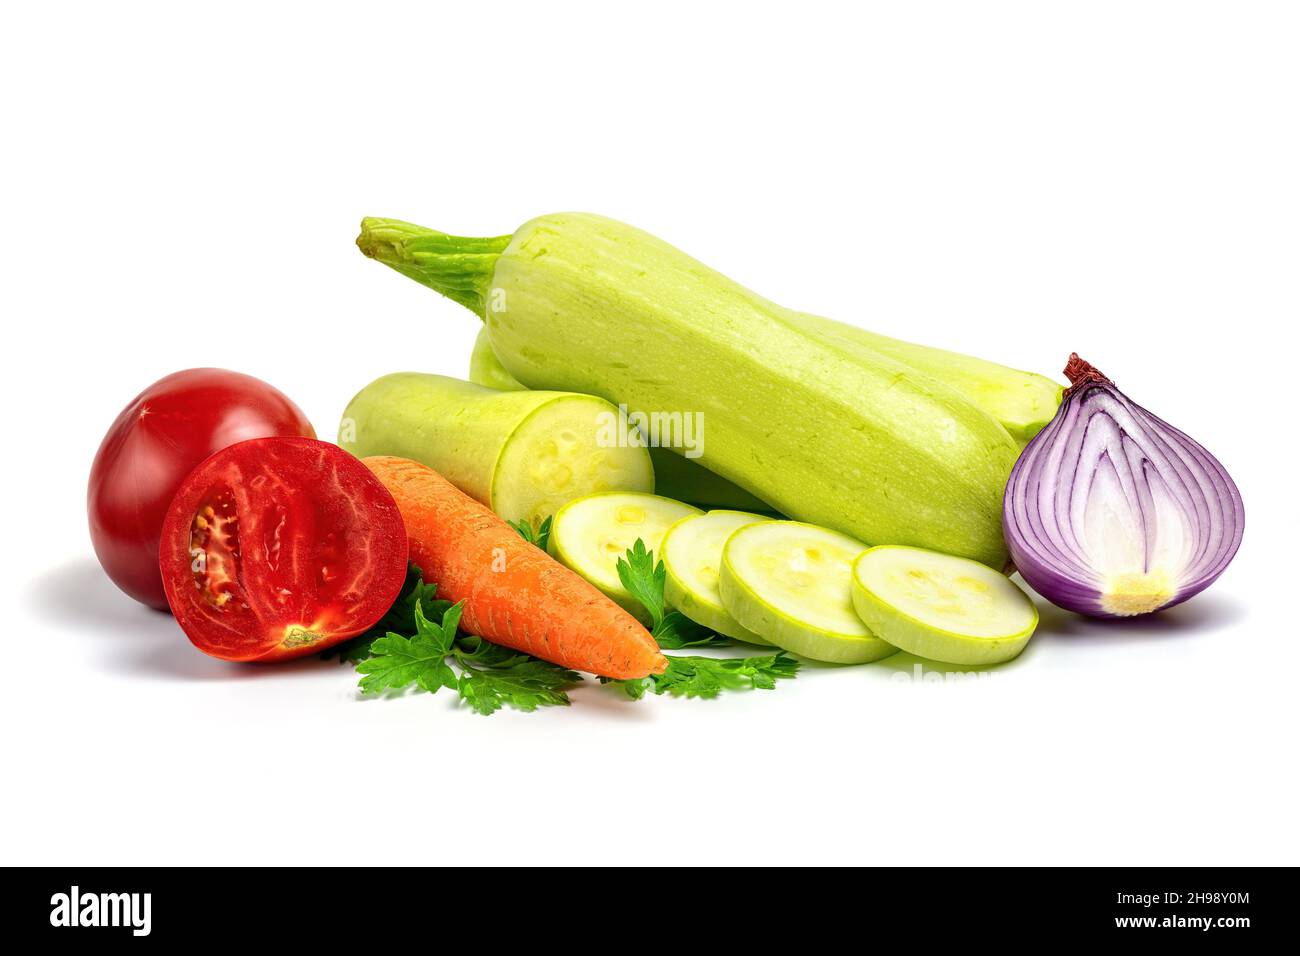 Verdure fresche per la cottura di stufato vegetale isolato su sfondo bianco. Ingredienti crudi per insalata vegetale: Zucchine o midollo, cipolla, pomodoro, carr Foto Stock